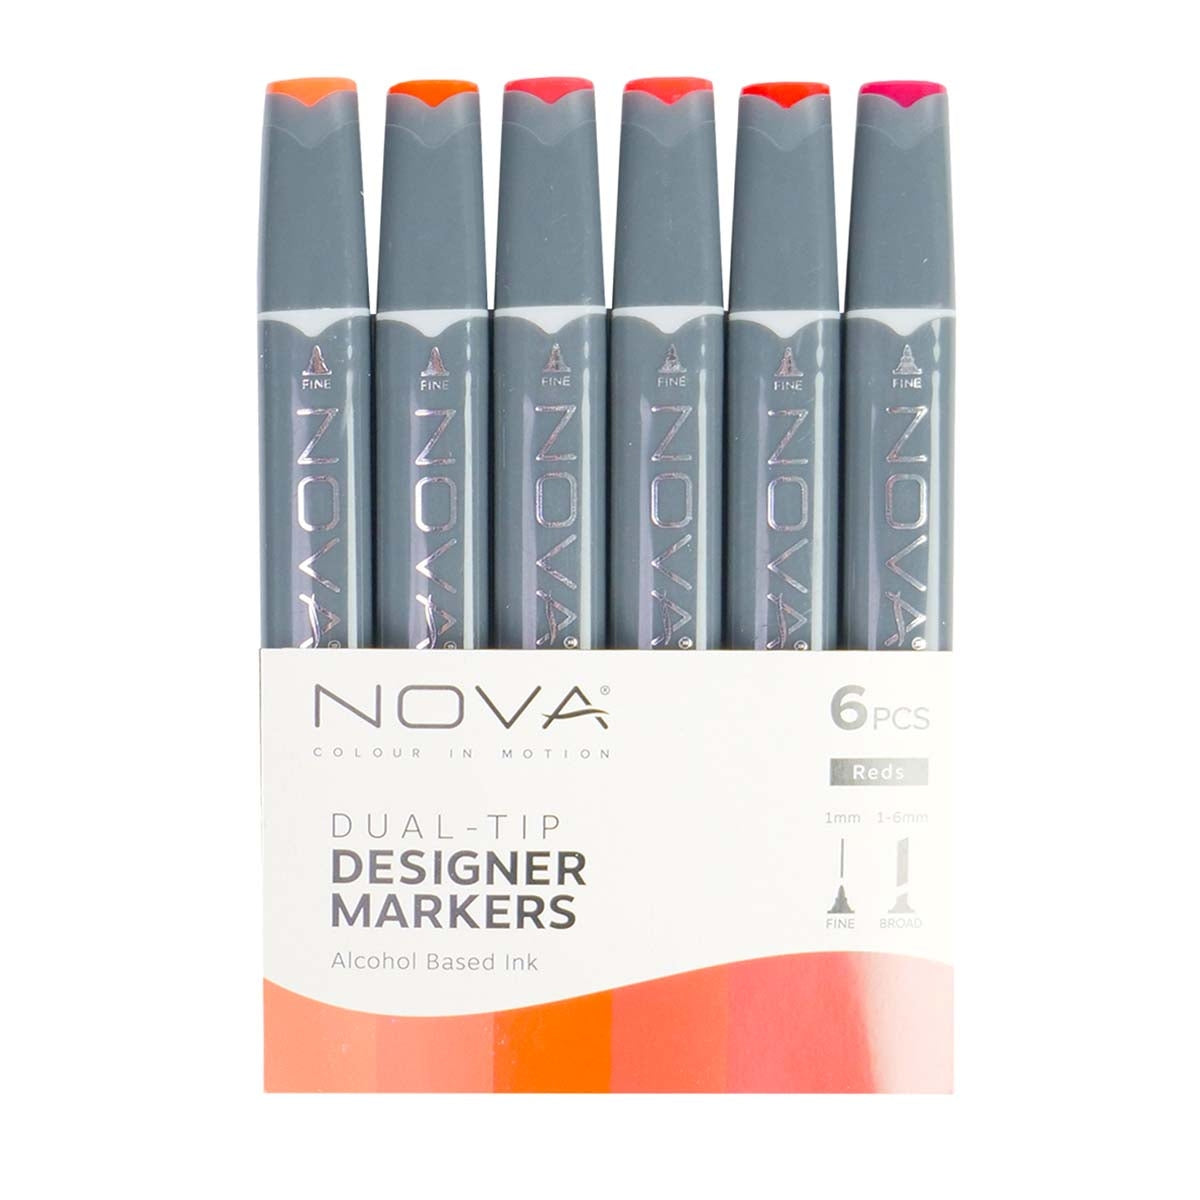 Nova - Designer Markers - Dual Tip - Alcohol Based - 6 Pack - Reds